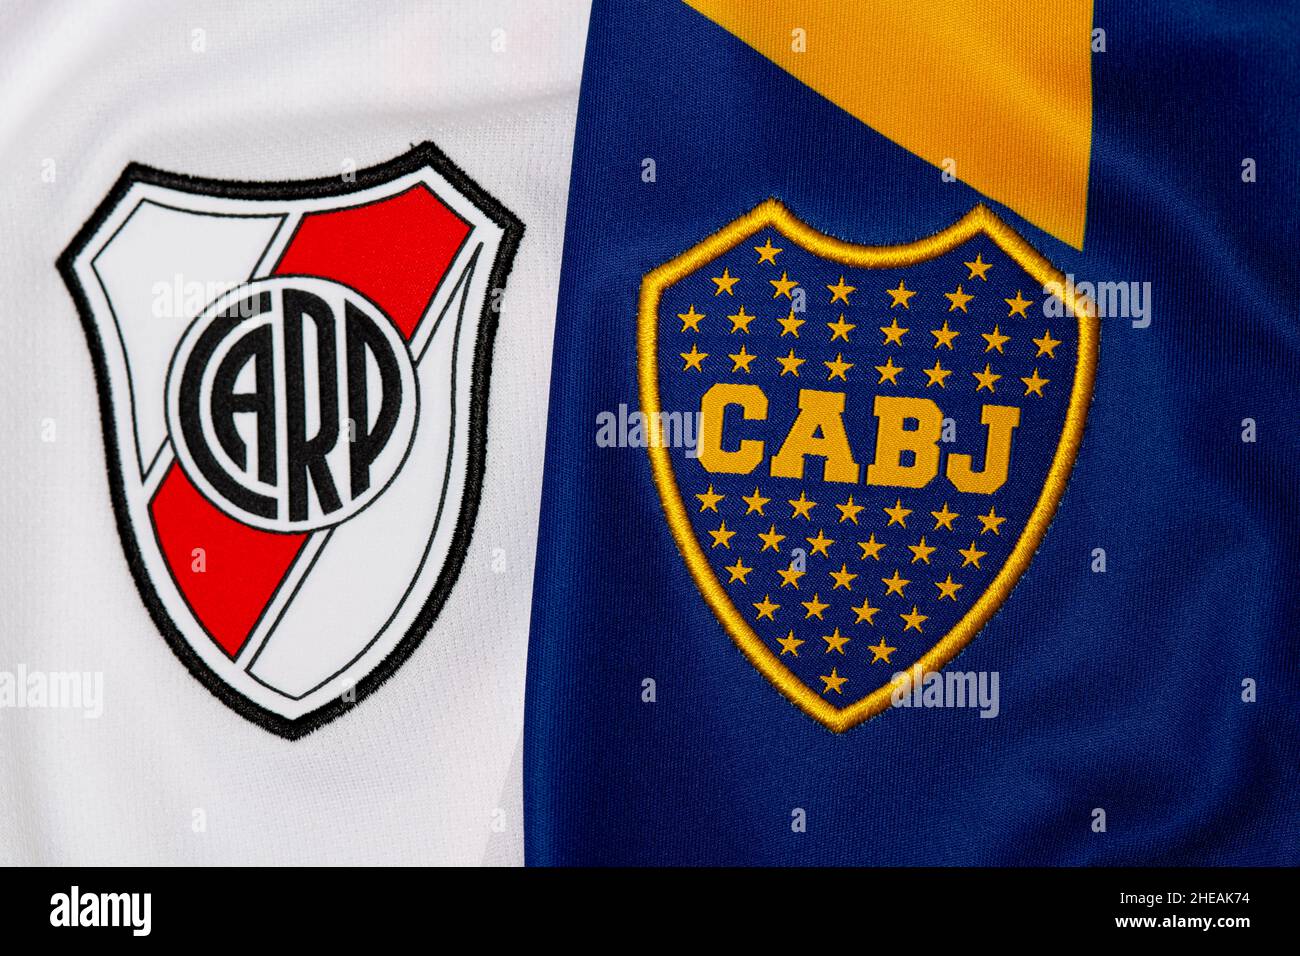 Primo piano di Boca Juniors e maglia da calcio River Plate. Superclásico è la partita di calcio in Argentina tra Buenos Aires rivali Boca e River. Foto Stock